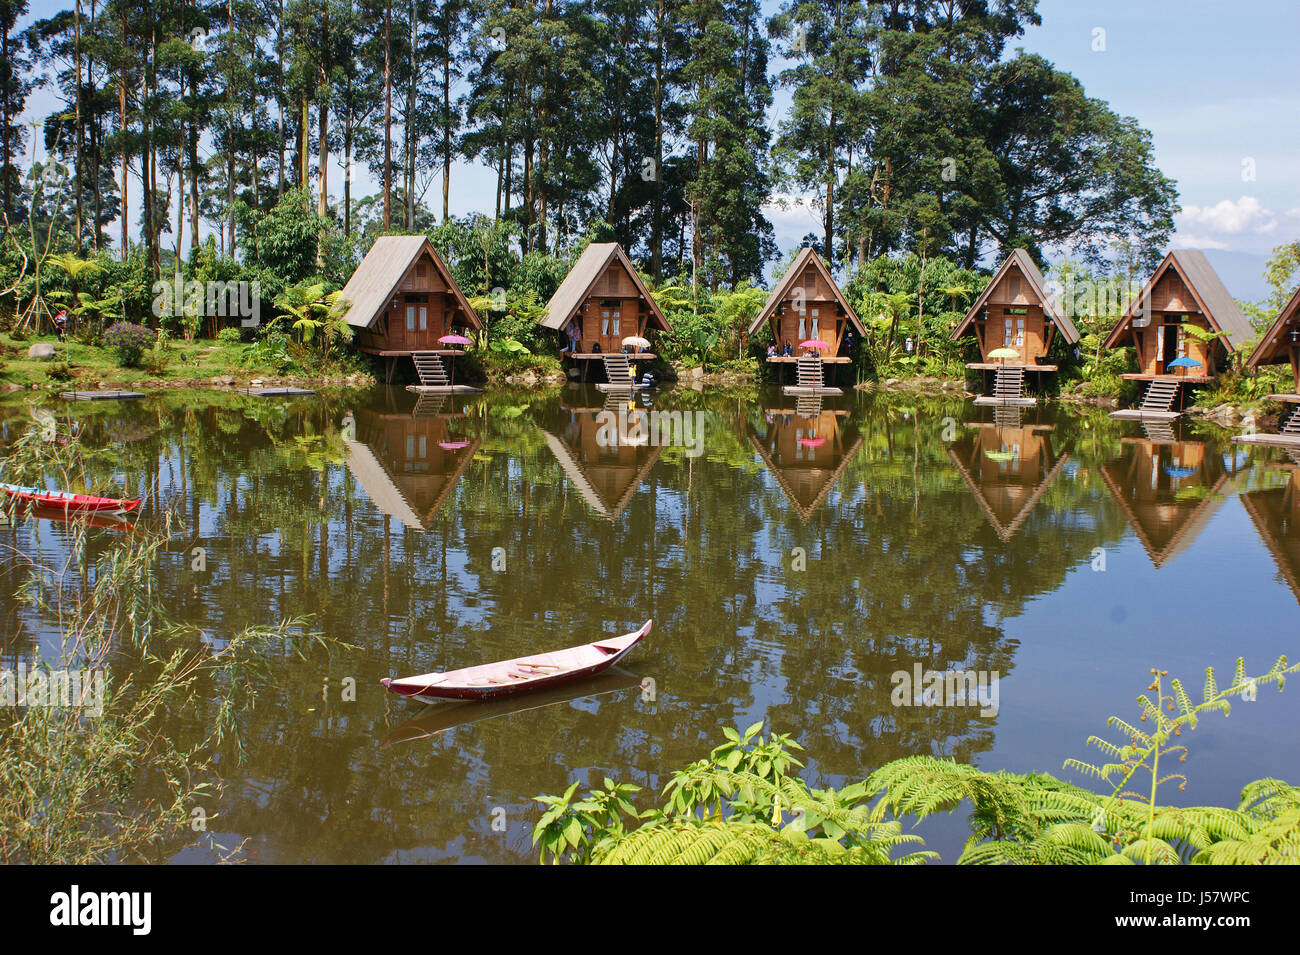 Dusun Bambu, Lembang, Bandung Stock Photo